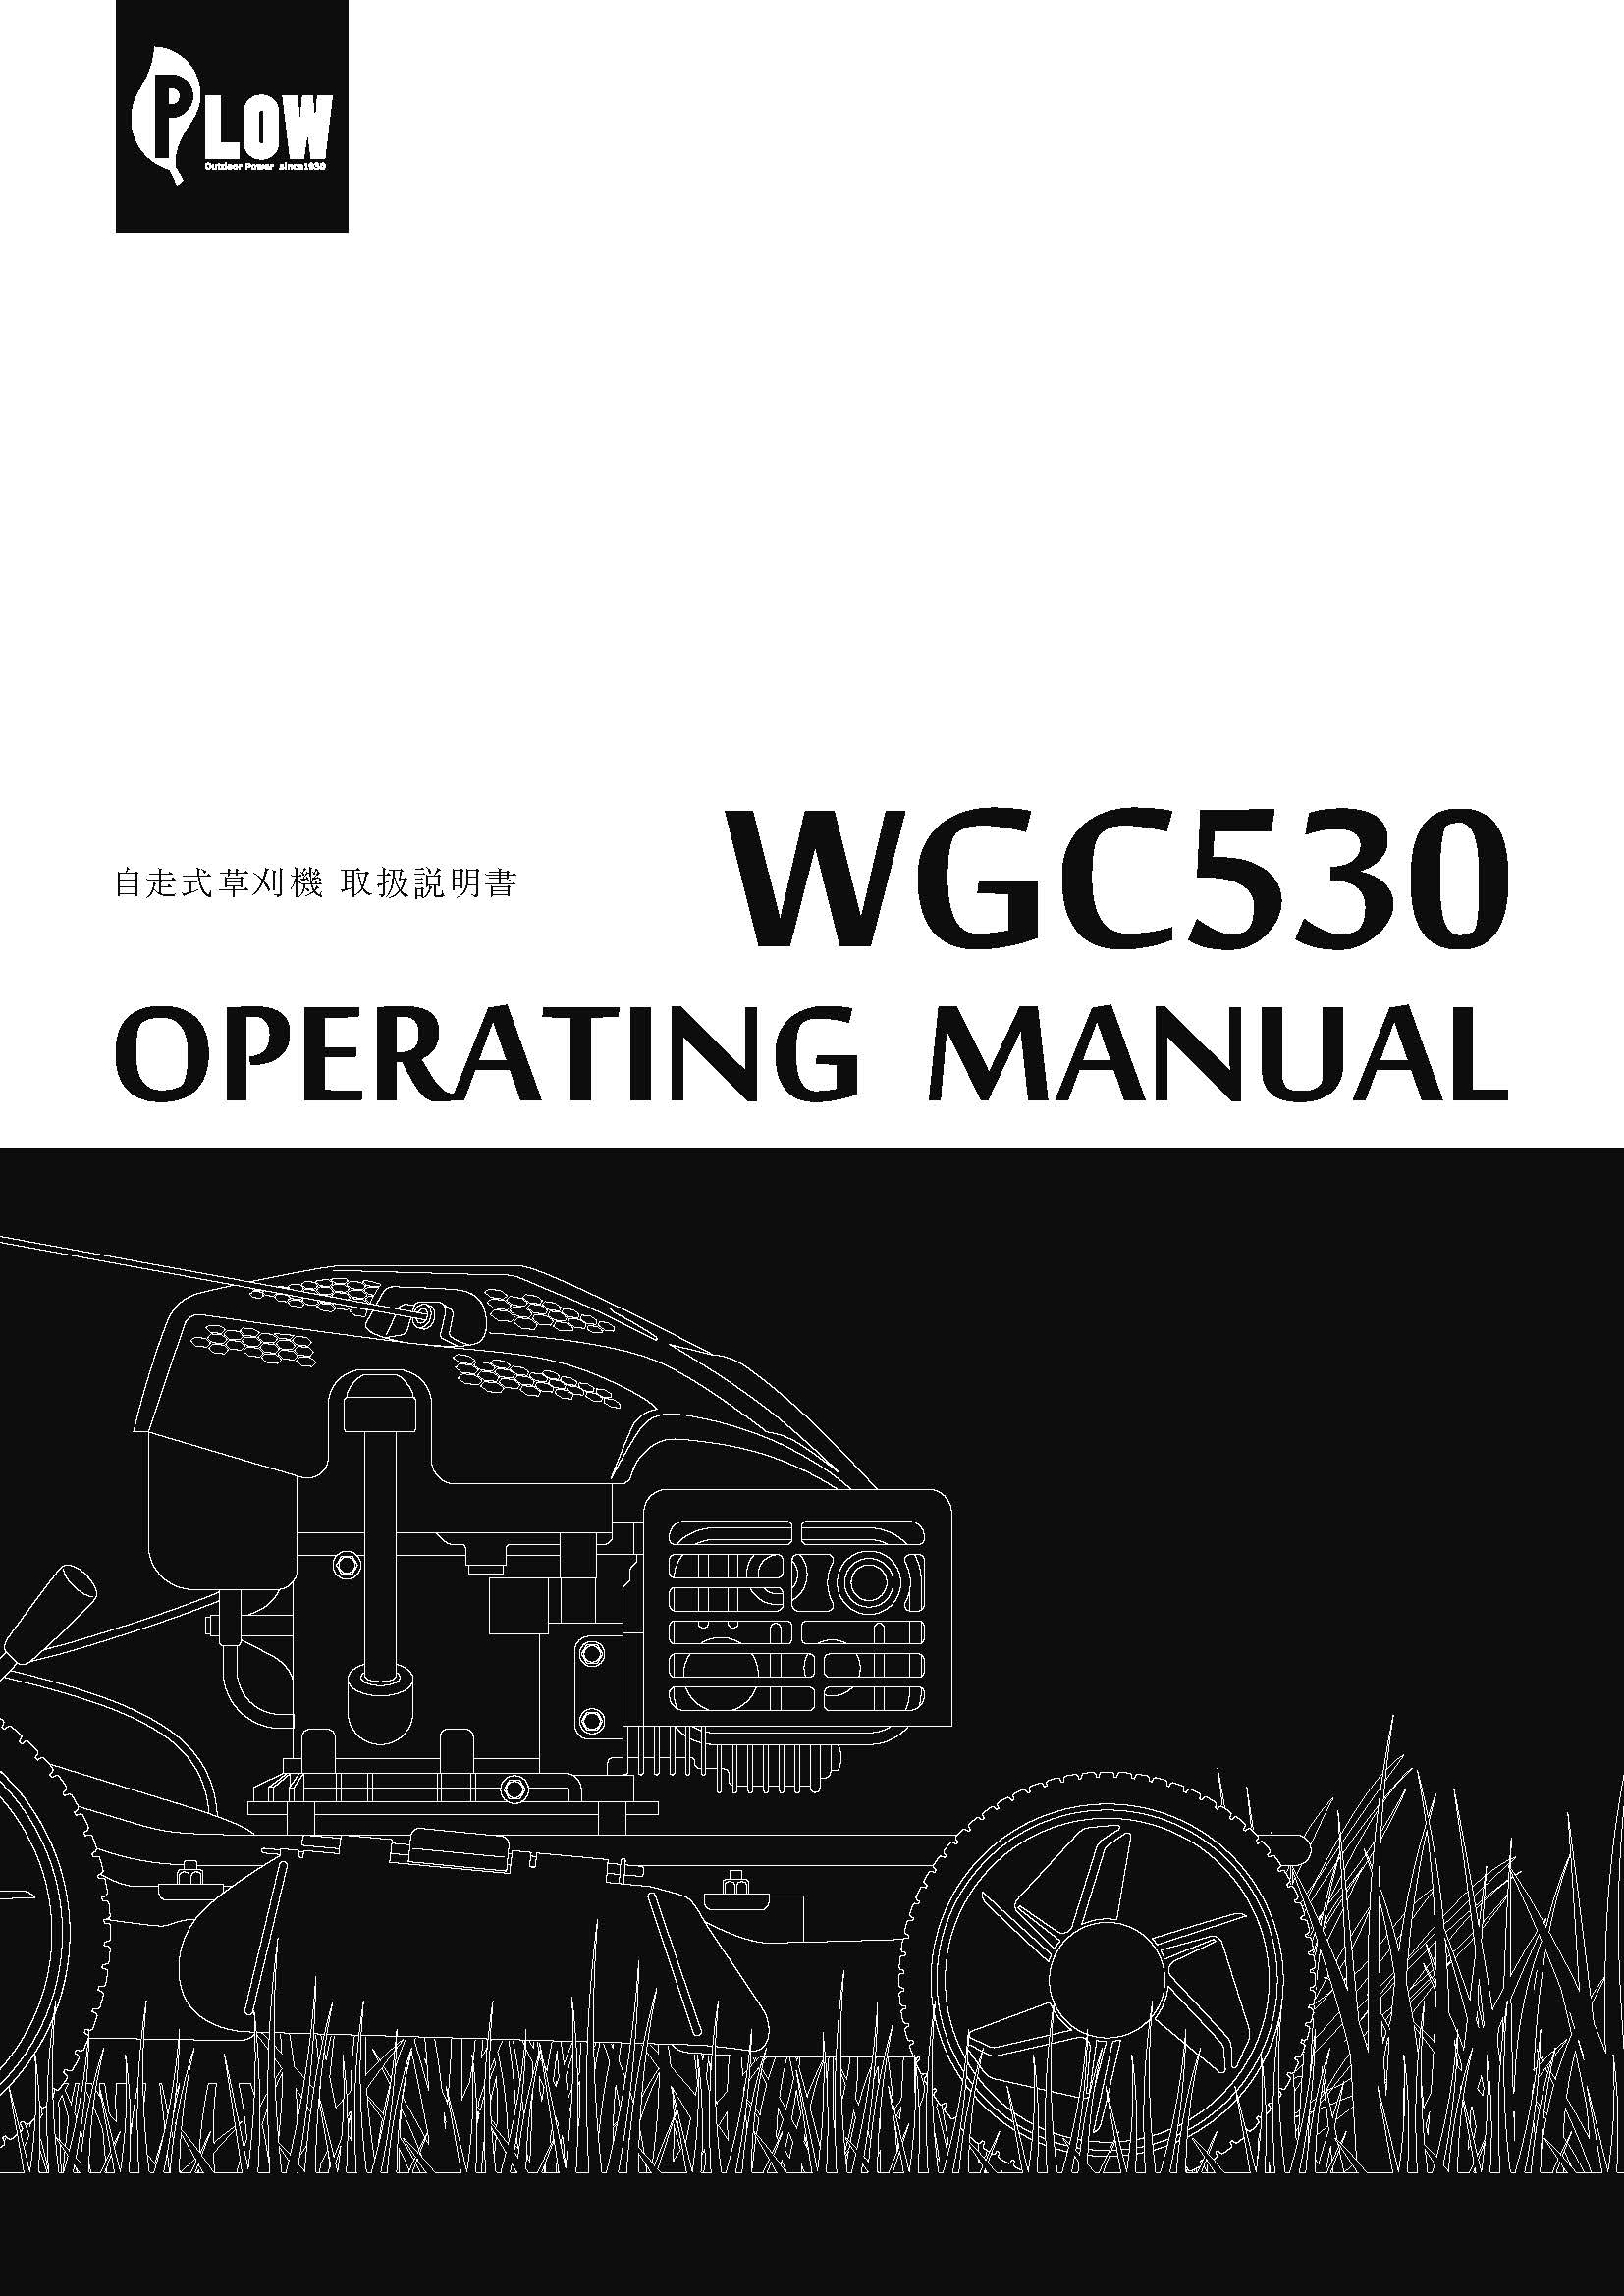 自走式草刈機 WGC530